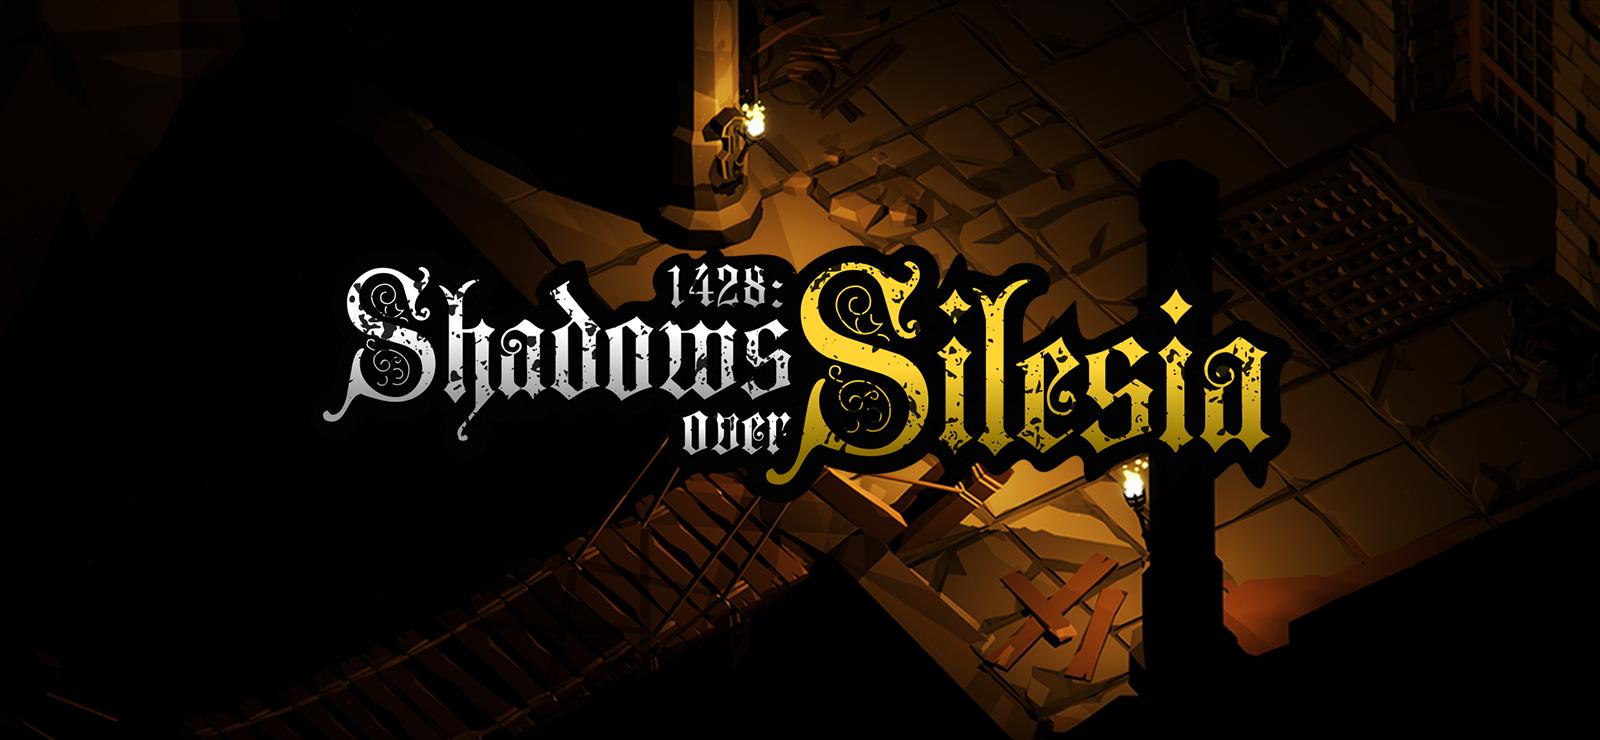 1428: Shadows Over Silesia